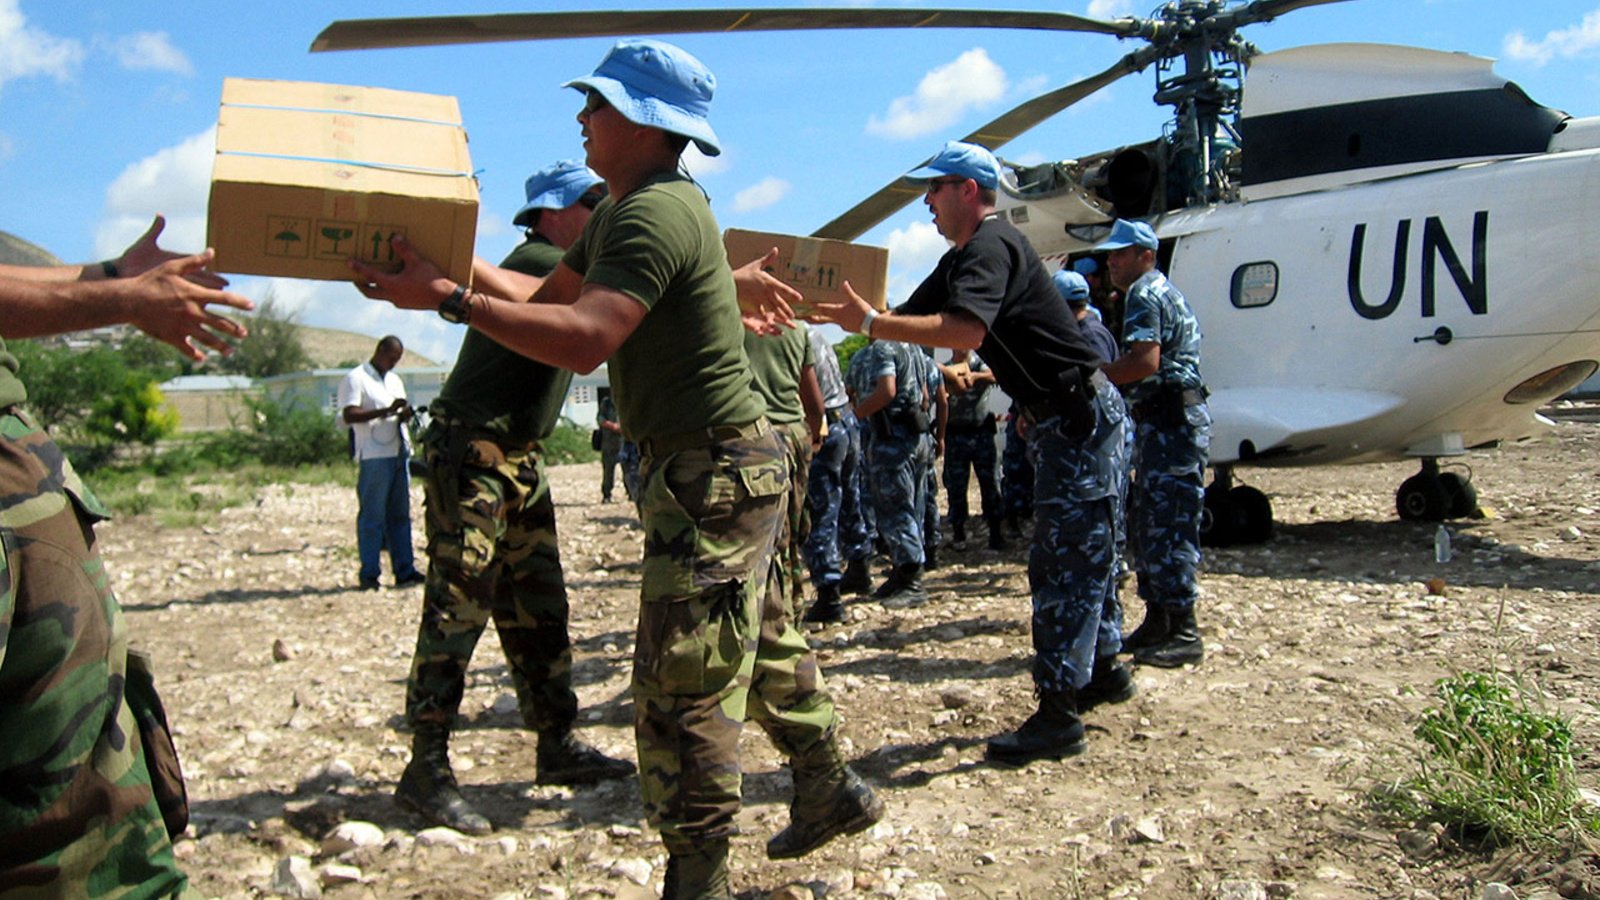 Une file de personnes en uniform en train de distribuer des boites de provisions d'un hélicoptère marqué "UN"